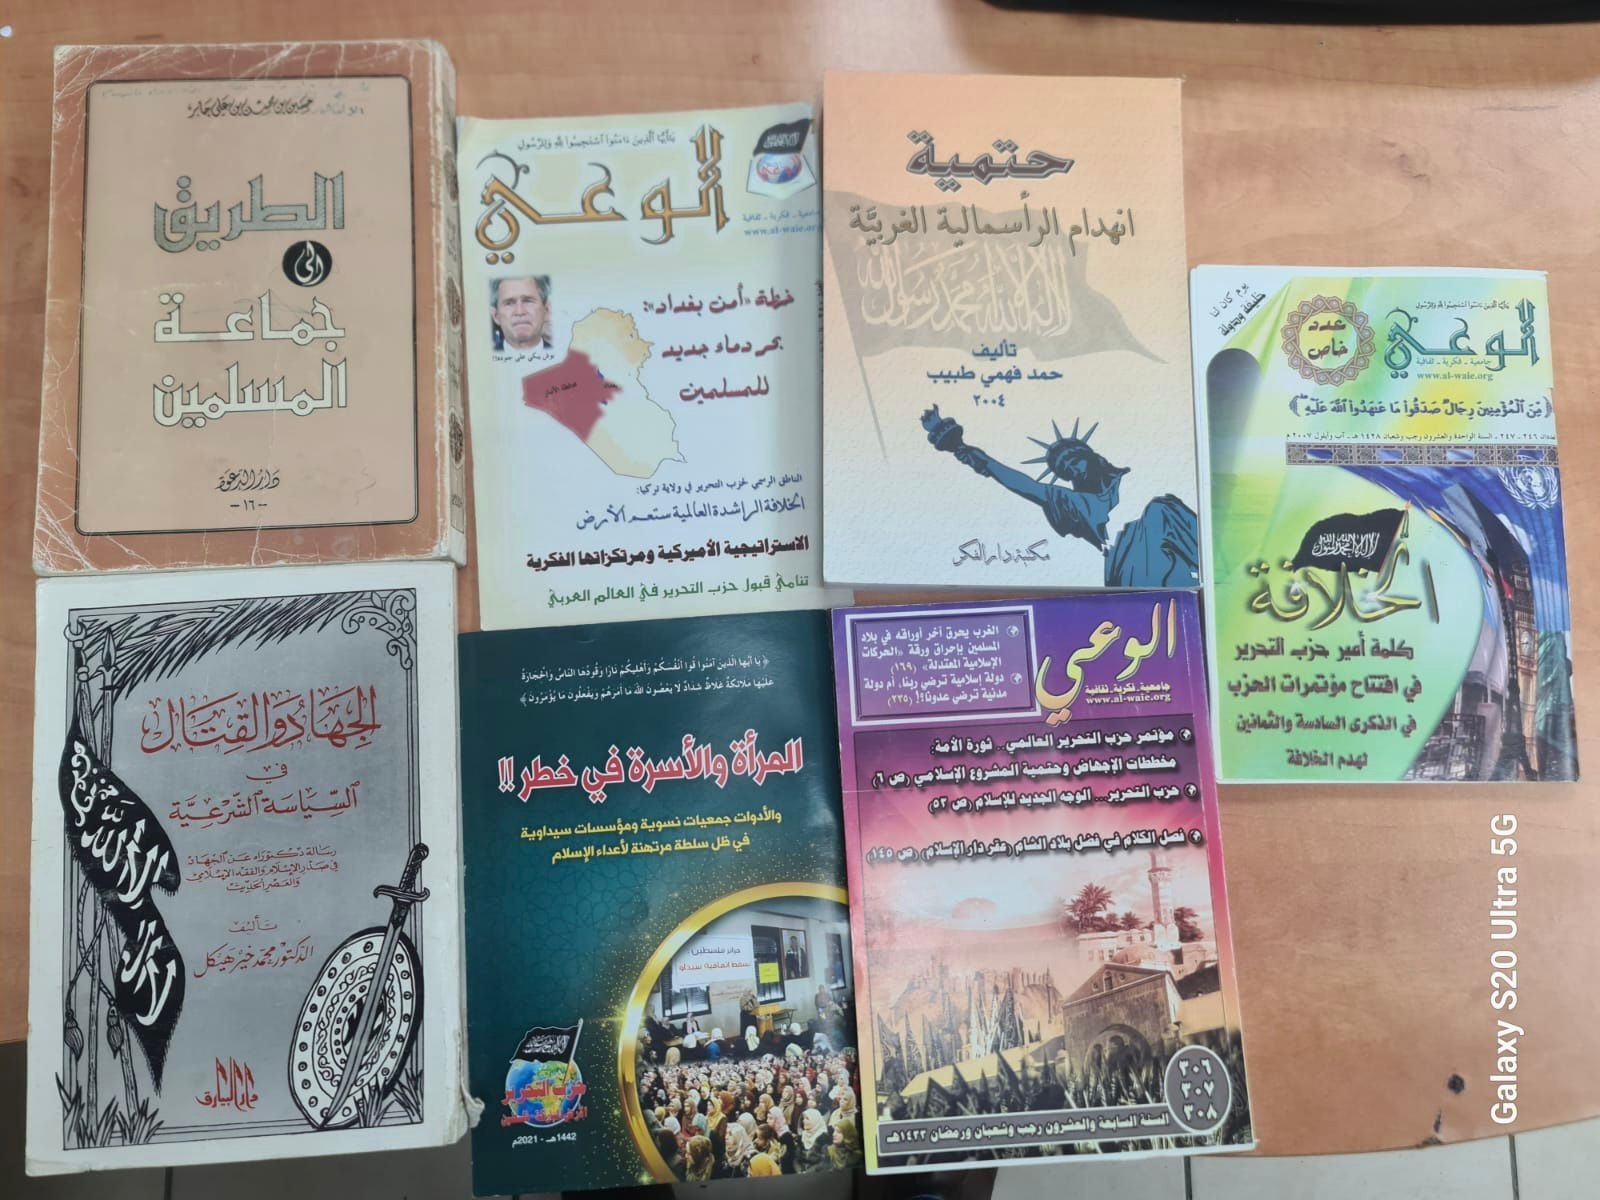 Materiály podporující Islámský stát, nalezené u zatčených. Zveřejněno 16. 11. 2023. Foto: Izraelská policie.